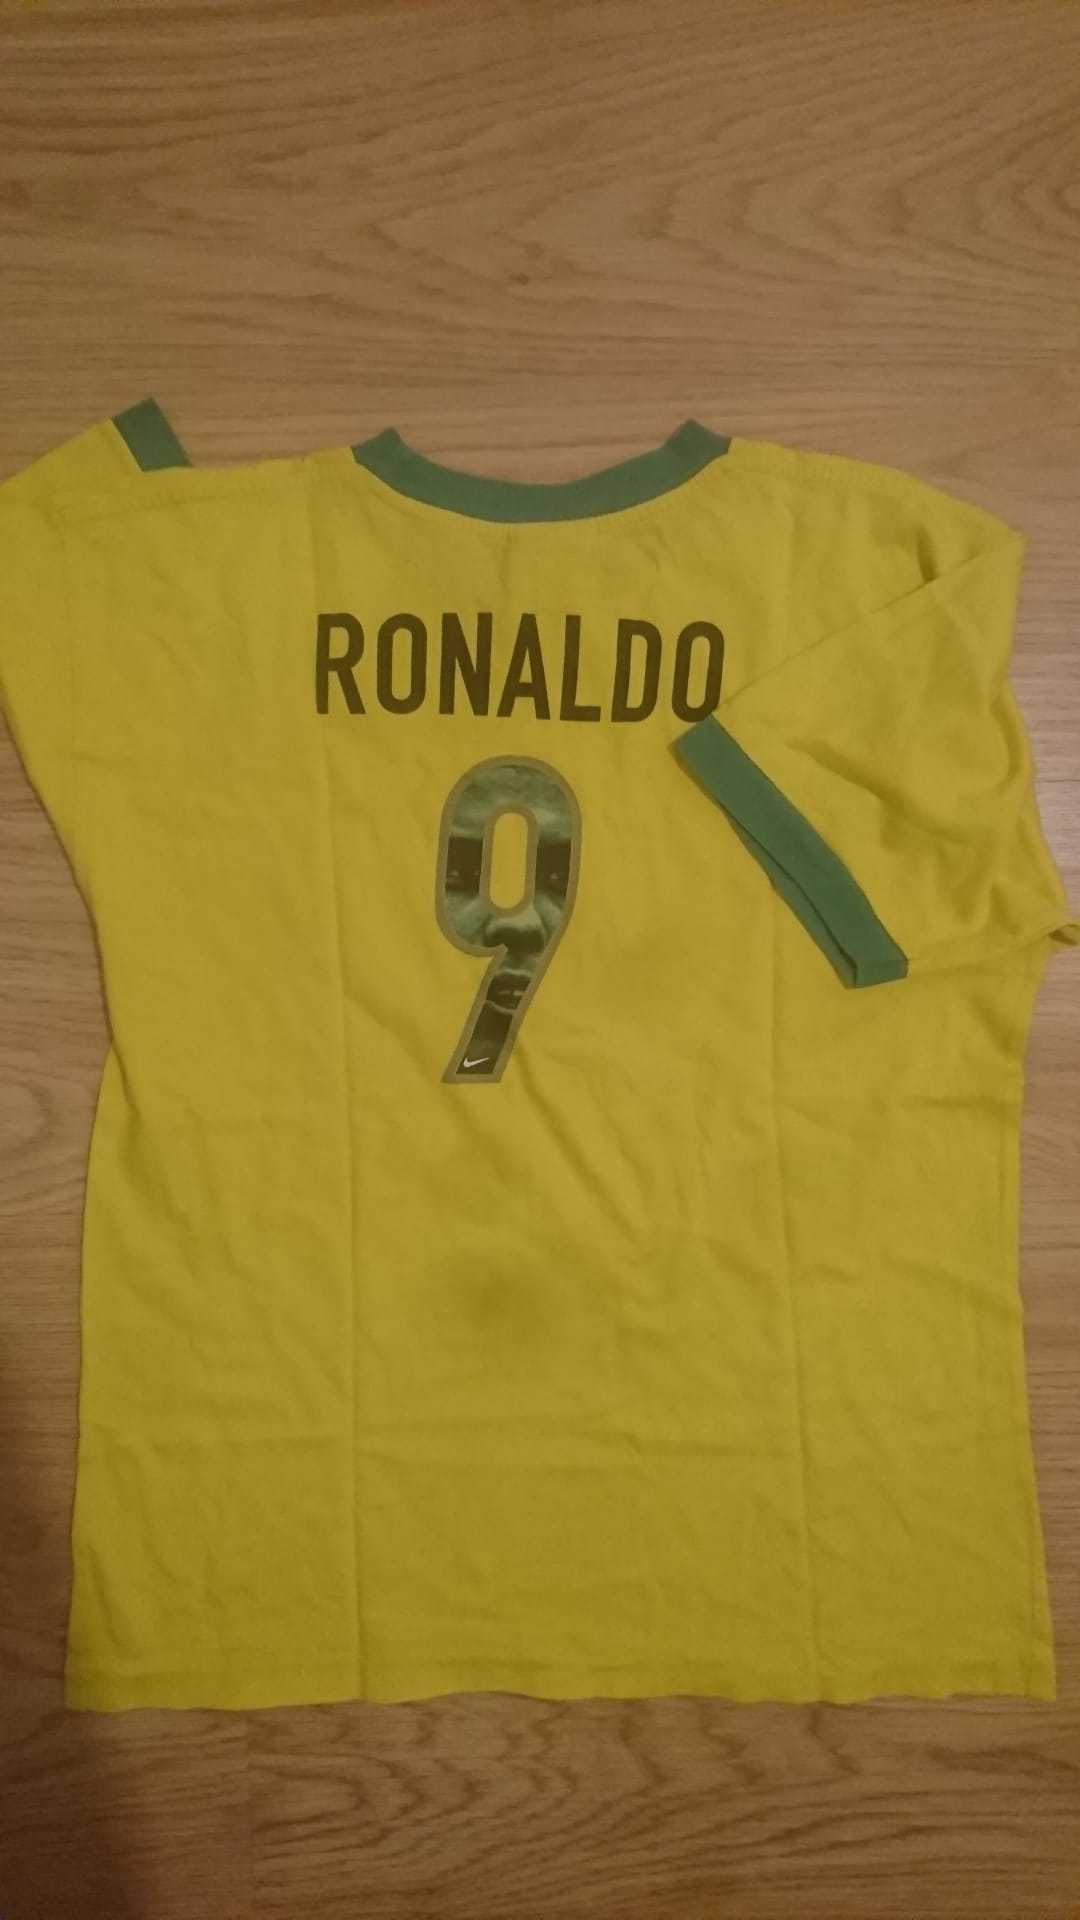 T-shirt vintage da Nike - Edição especial_Ronaldo dos anos 90.